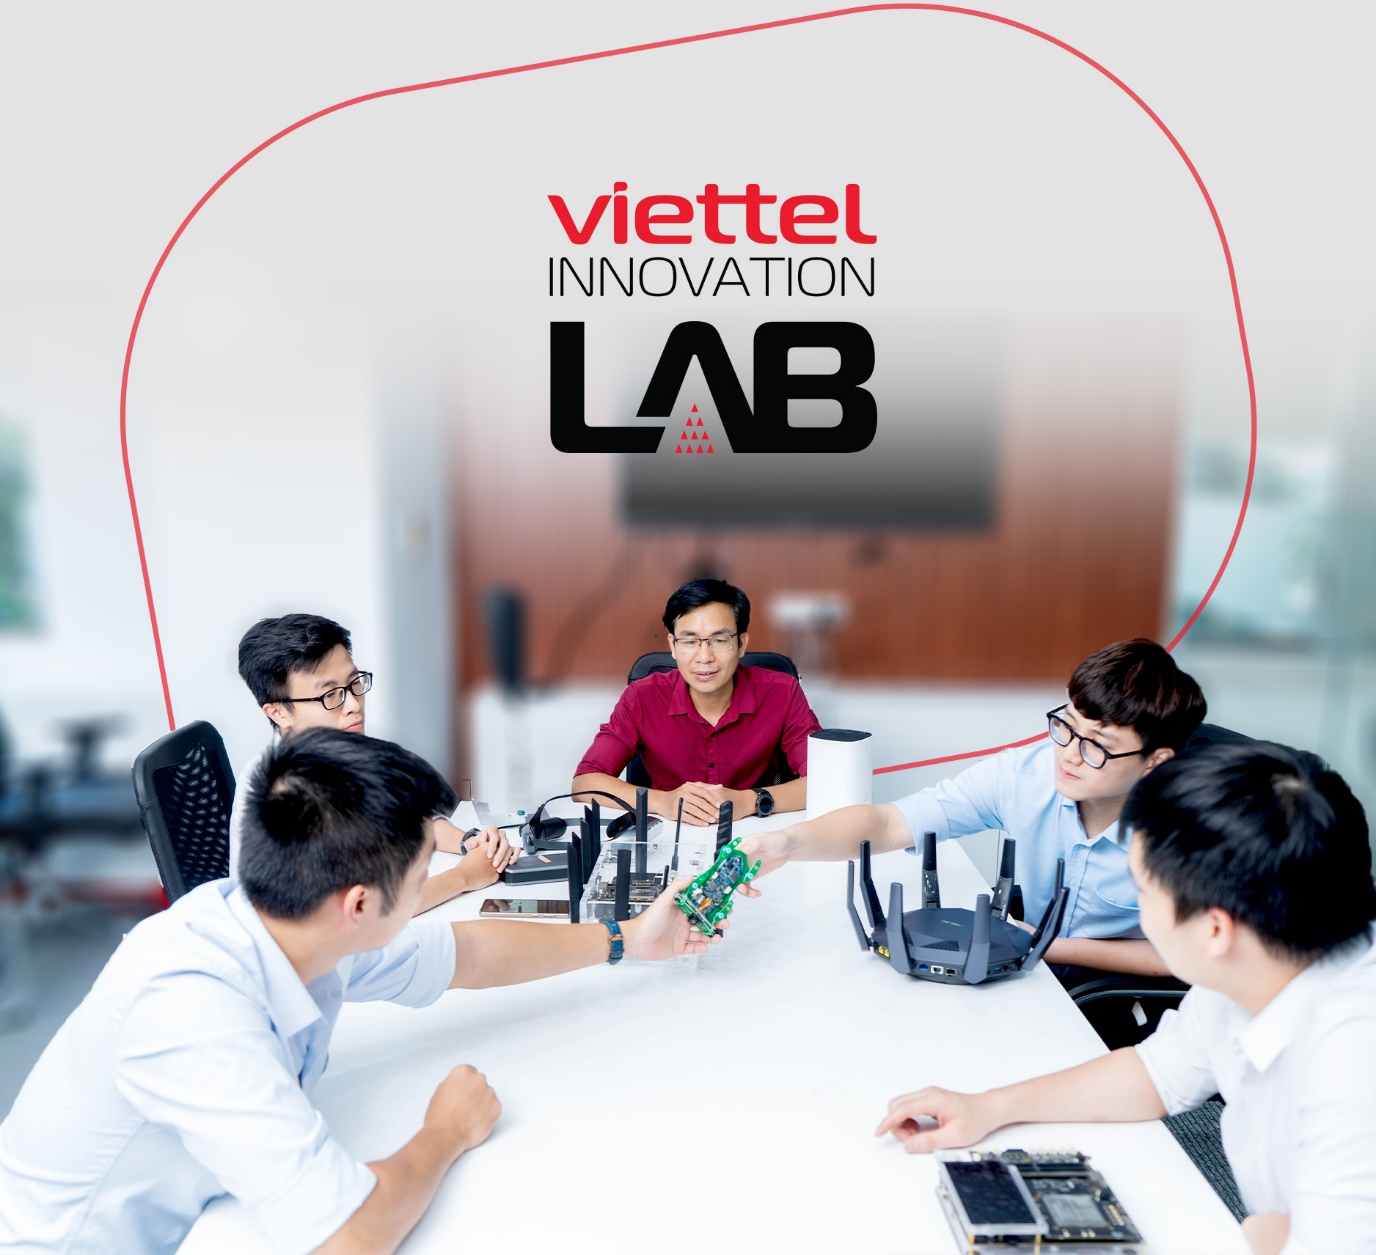 Phòng lab tiêu chuẩn quốc tế của Viettel sẽ mang đến nhiều hỗ trợ cho việc nghiên cứu